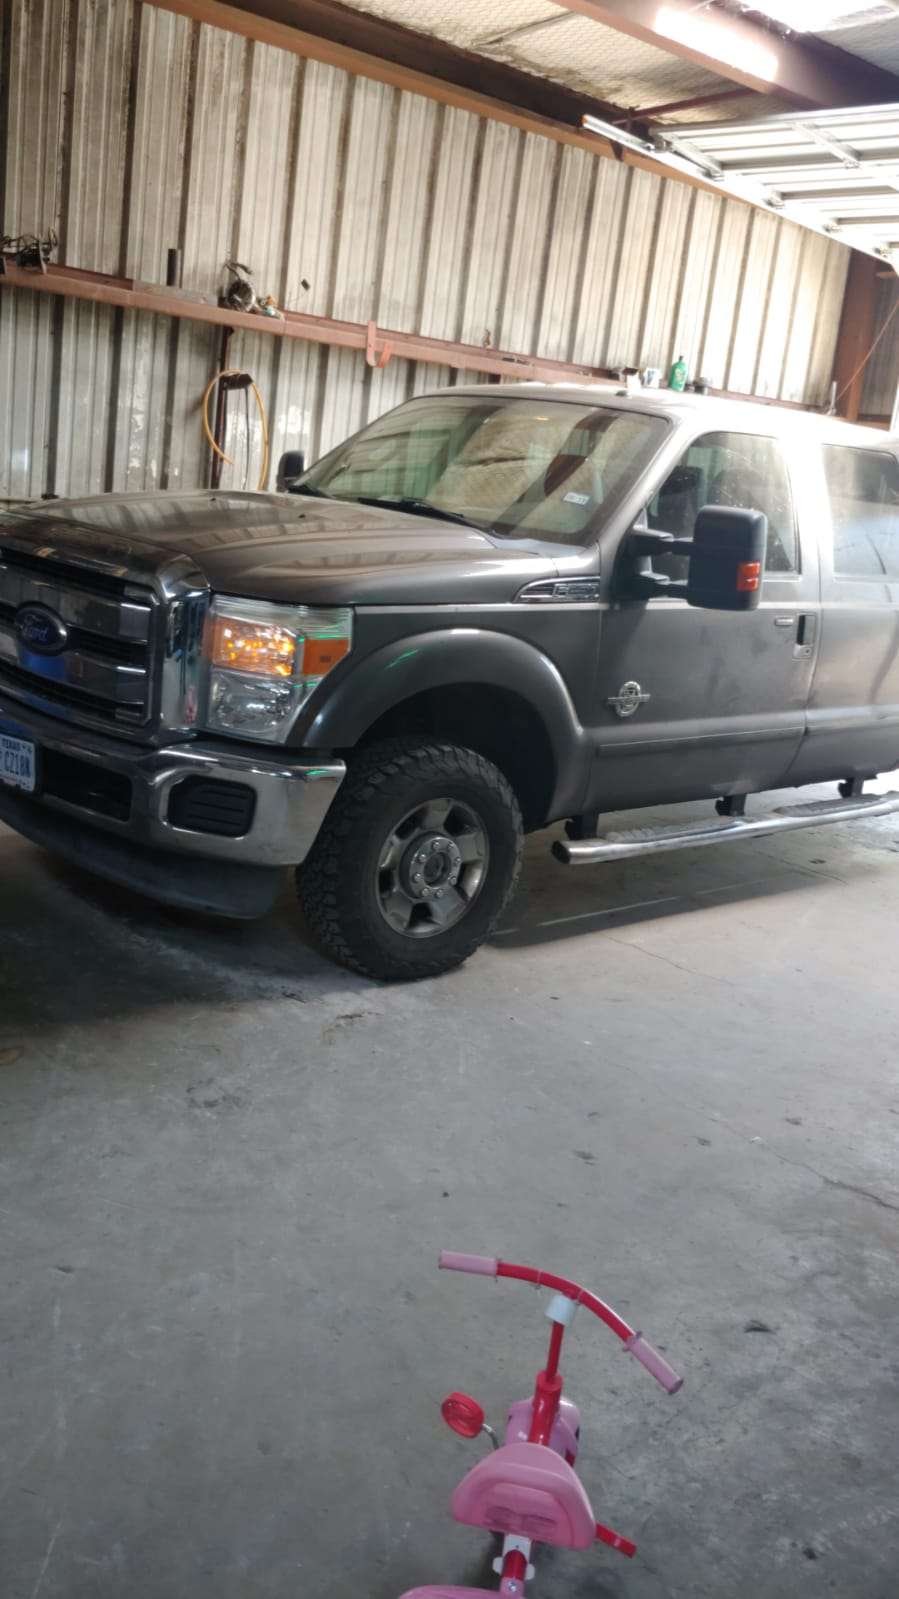 Roel truck and auto repair | 5731 Seguin Rd, Kirby, TX 78219, USA | Phone: (210) 719-5231